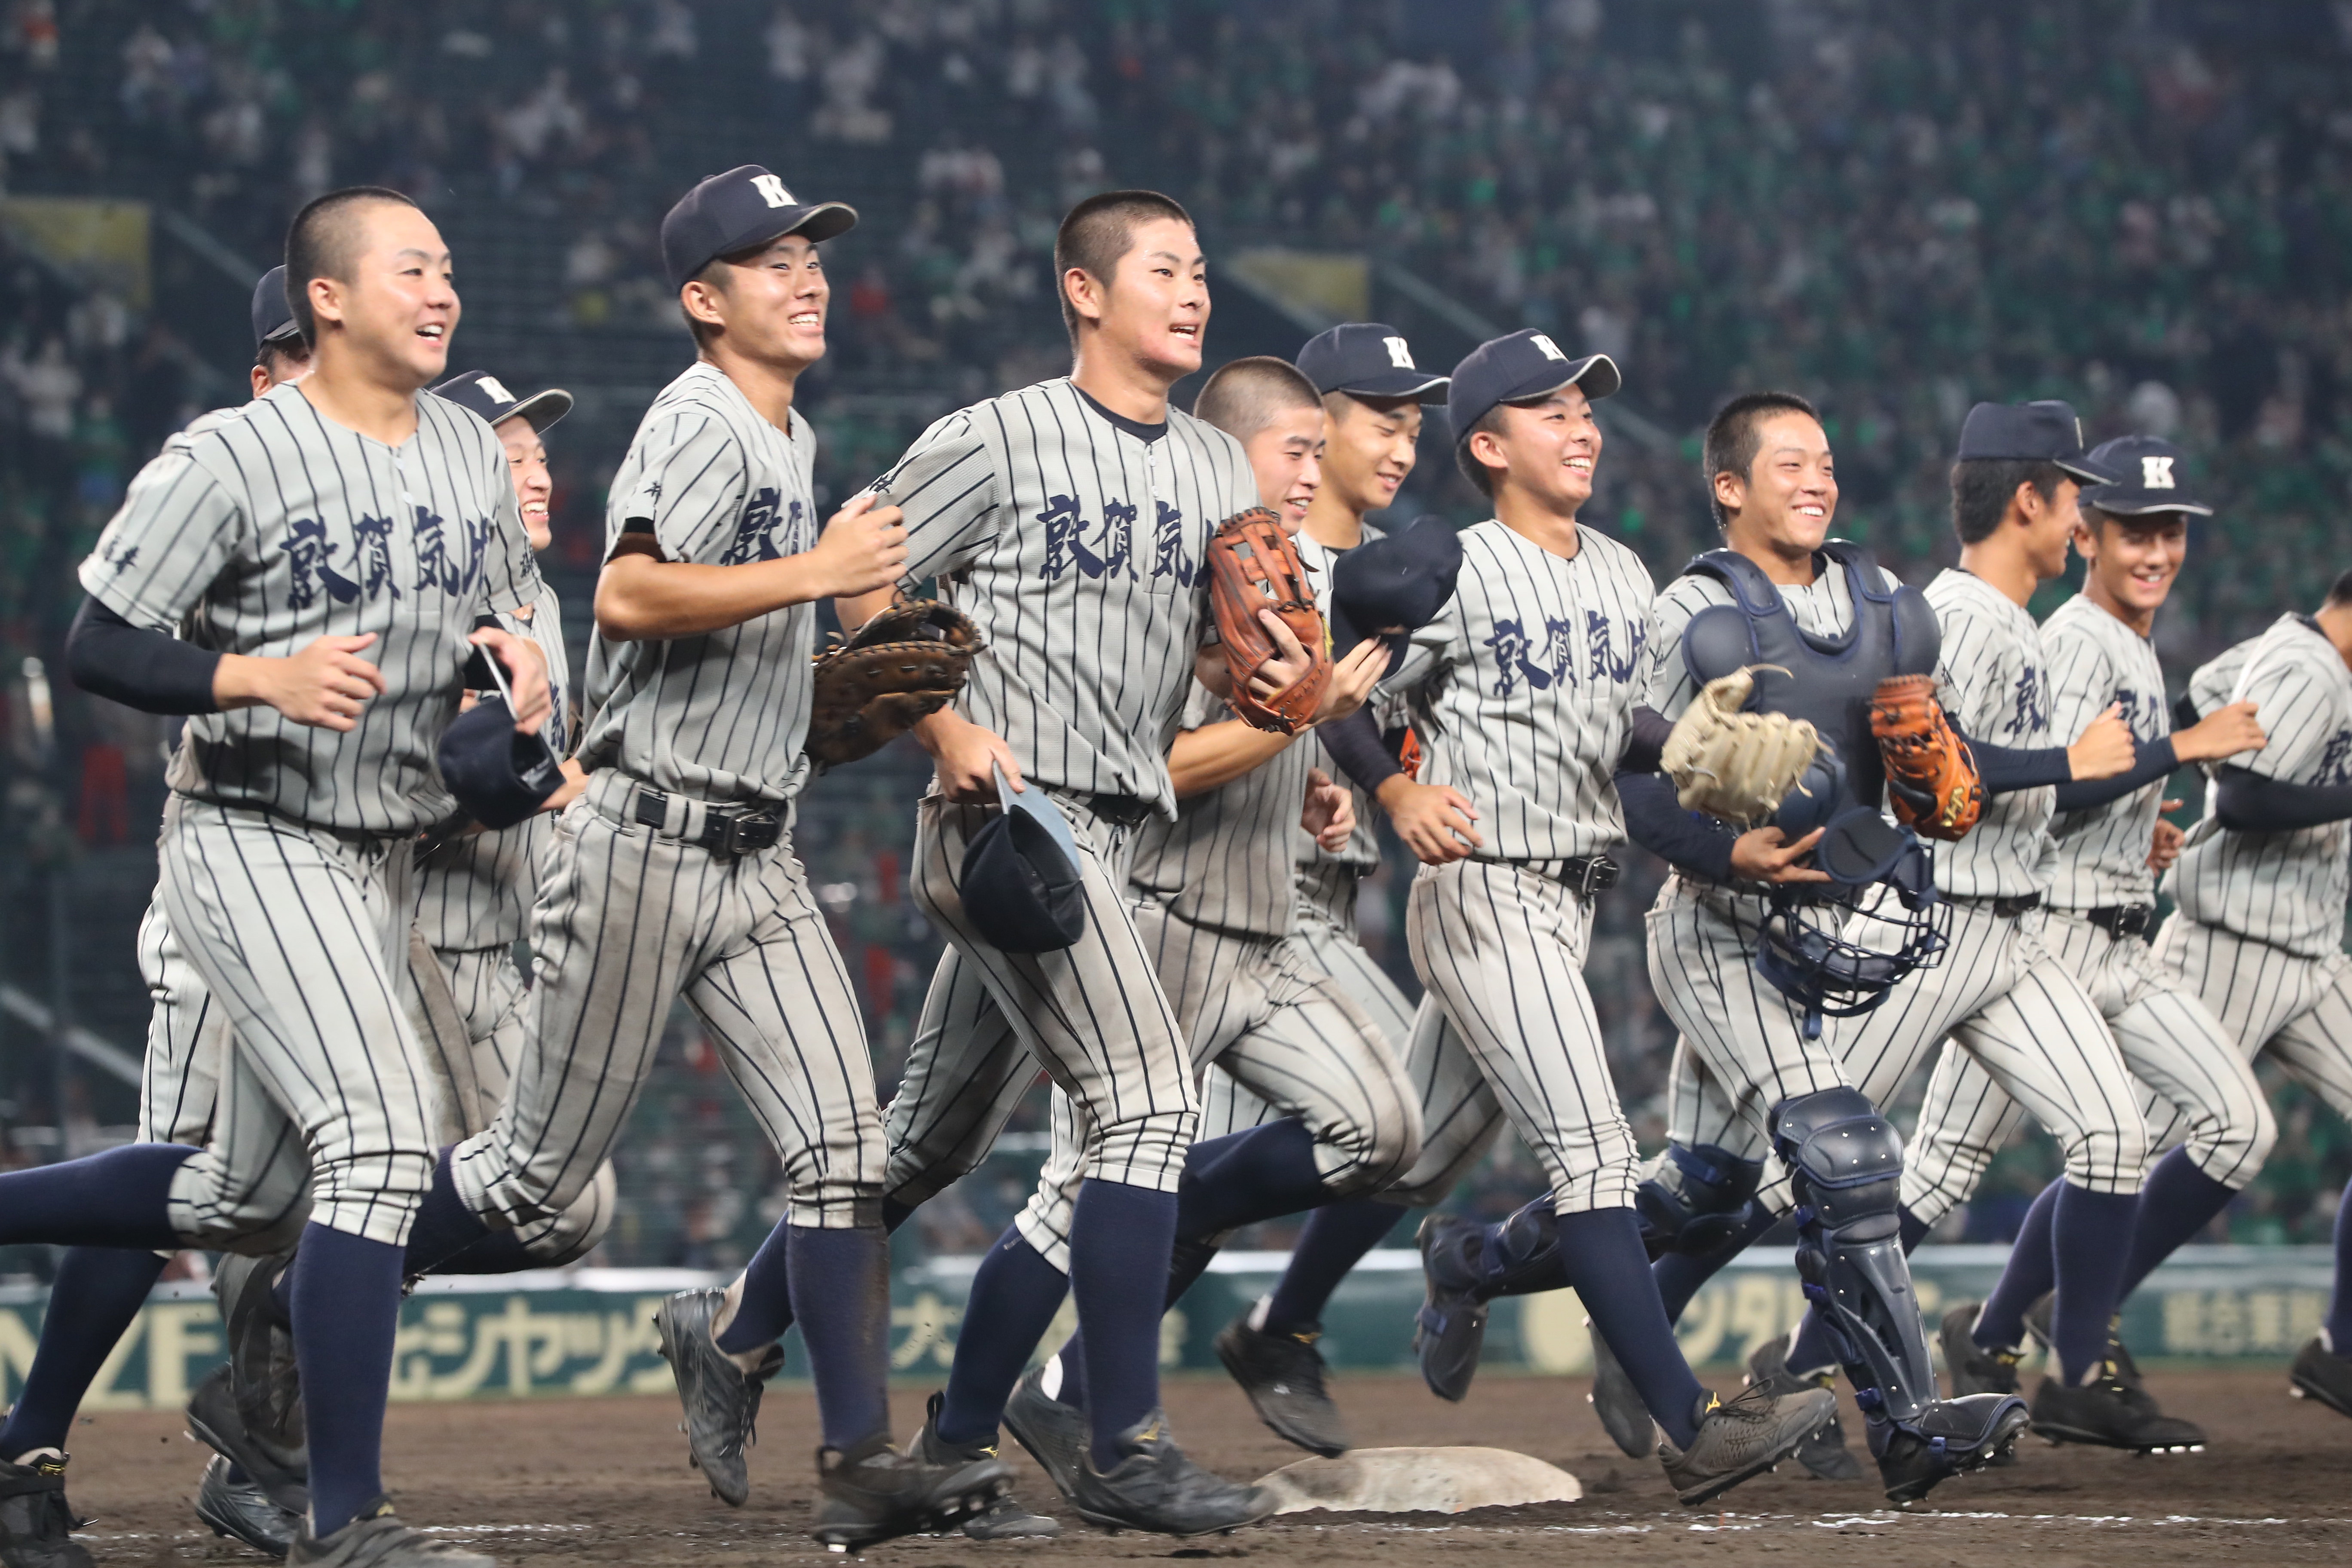 浜田、敦賀気比など3回戦へ 全国高校野球選手権第8日 - 産経ニュース